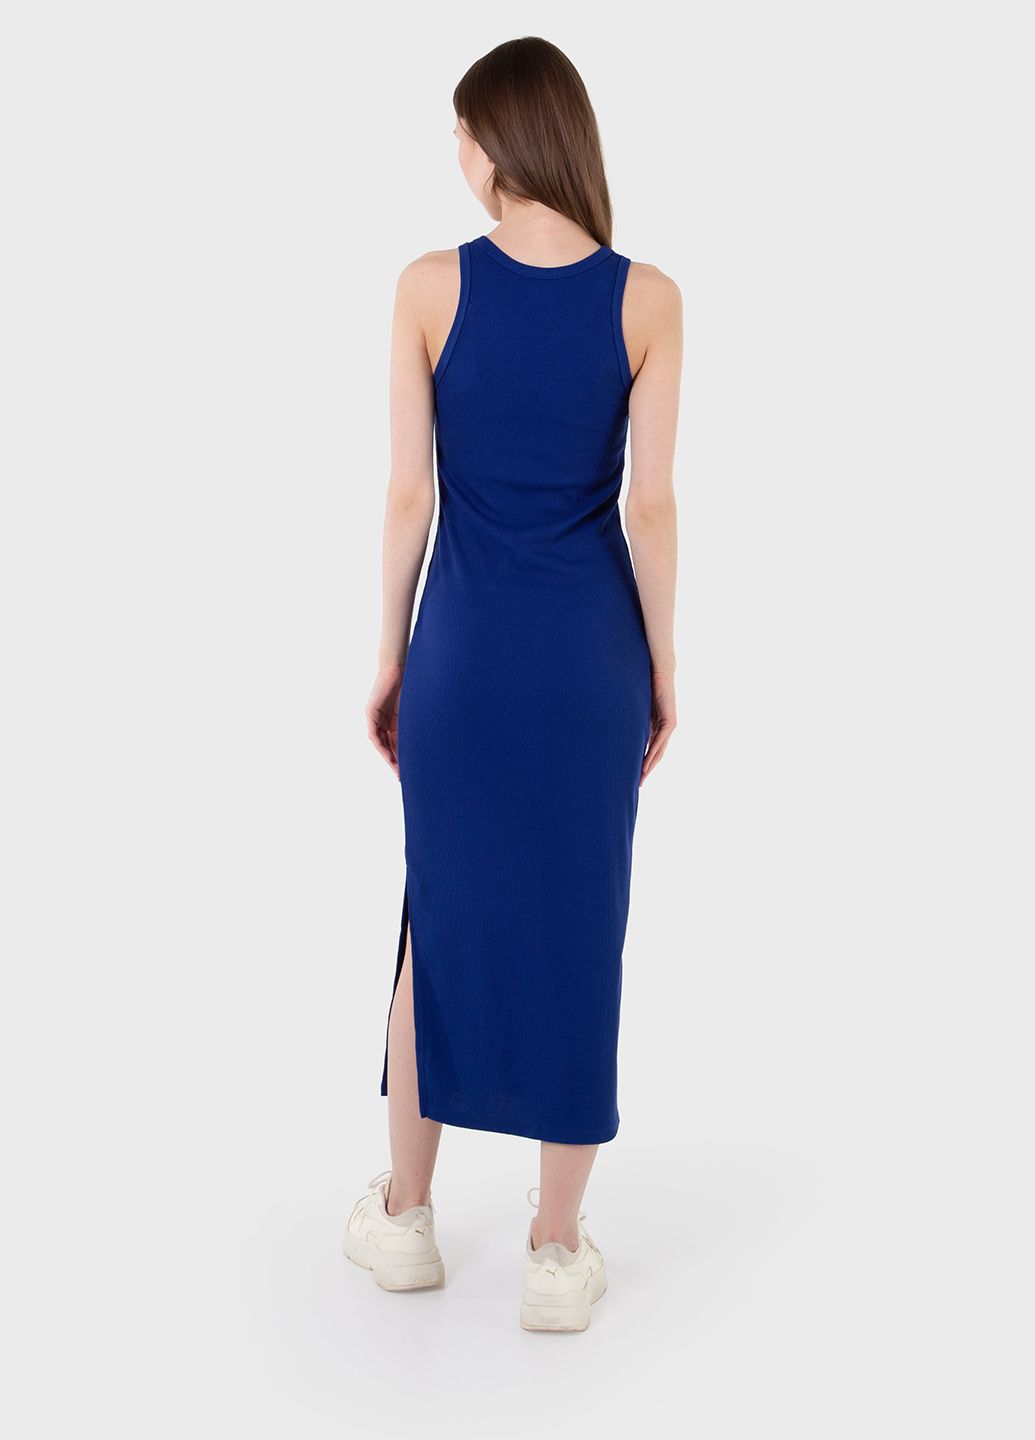 Купить Длинное платье-майка в рубчик синее Merlini Лонга 700000107 размер 42-44 (S-M) в интернет-магазине